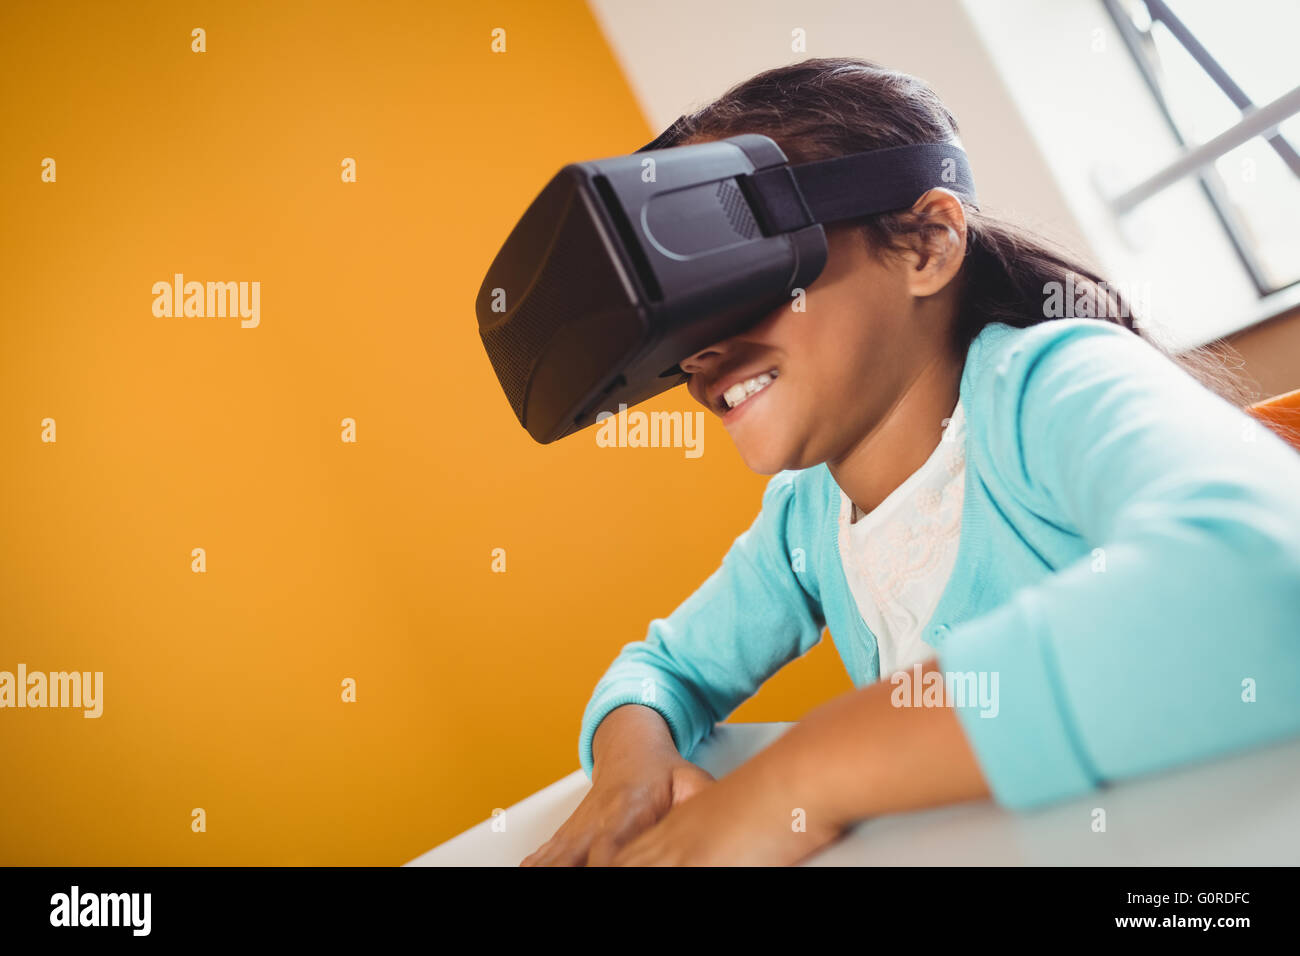 Fille à l'aide d'un appareil de réalité virtuelle Banque D'Images